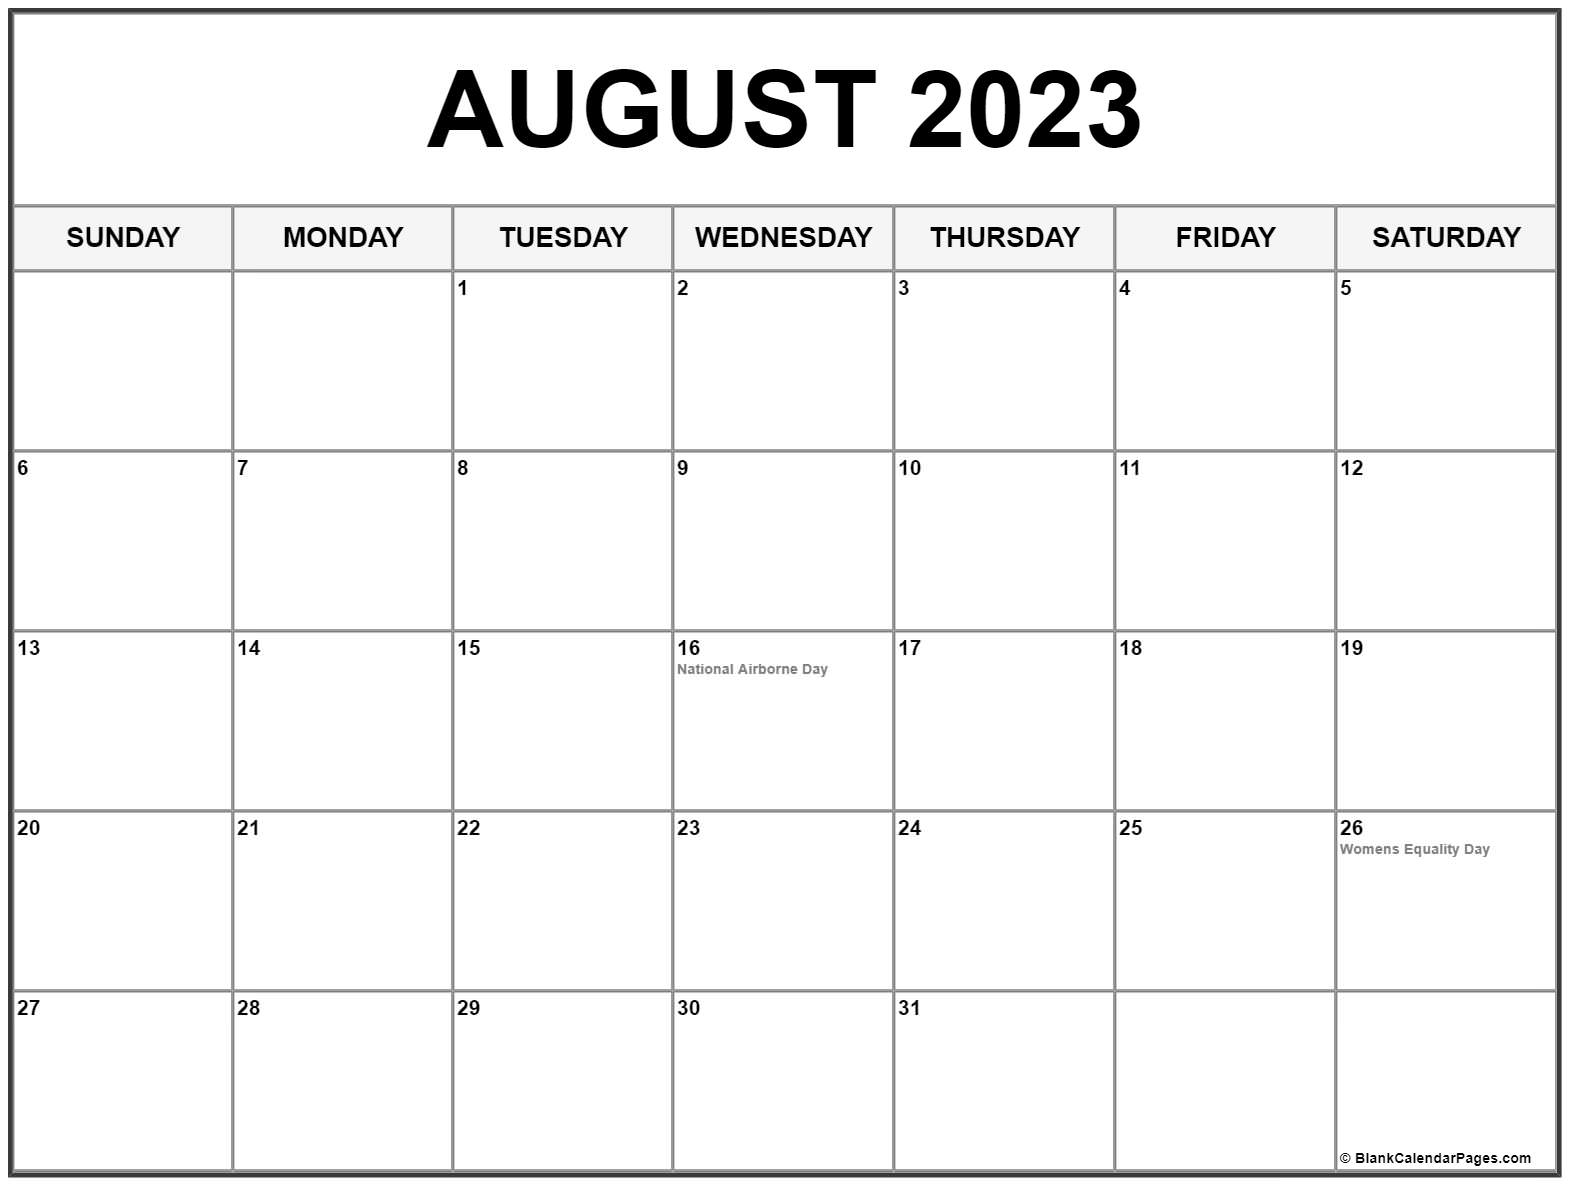 august-2023-calendar-with-holidays-canada-get-calendar-2023-update